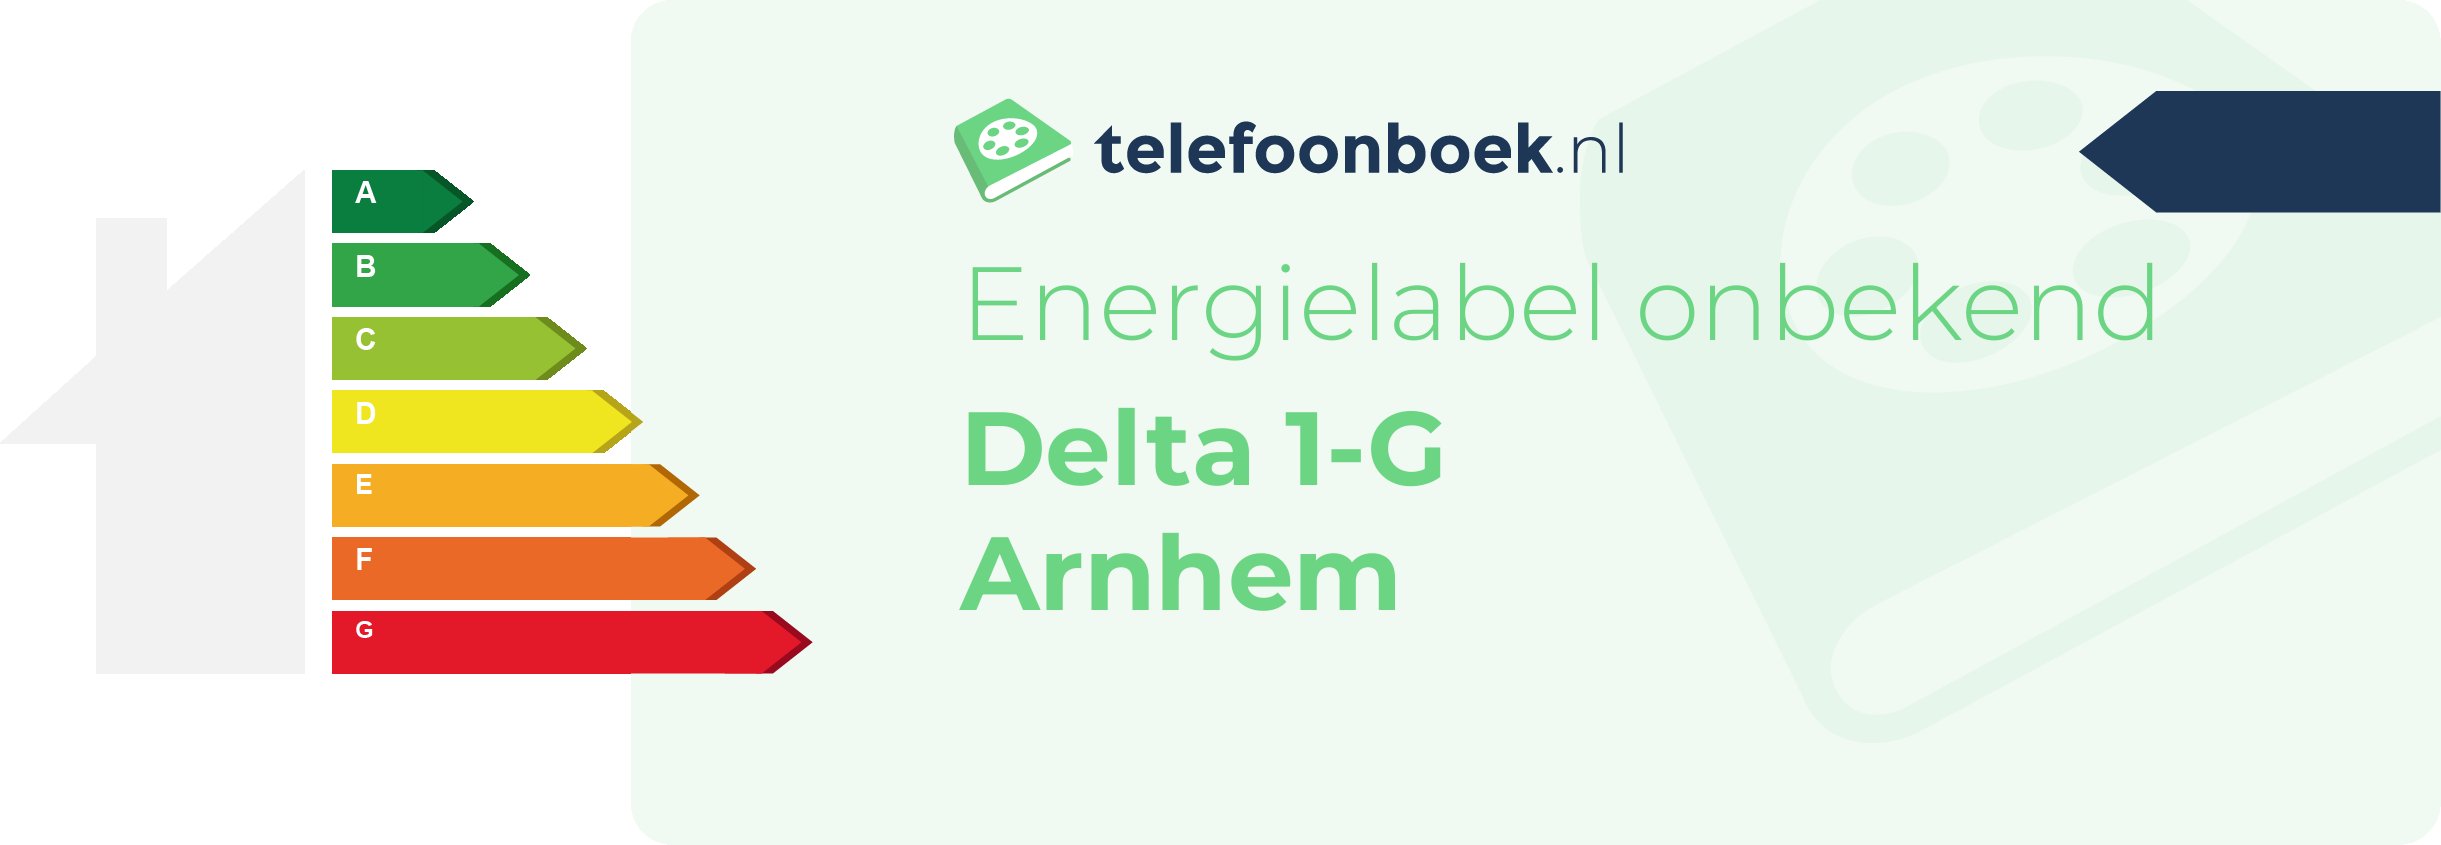 Energielabel Delta 1-G Arnhem